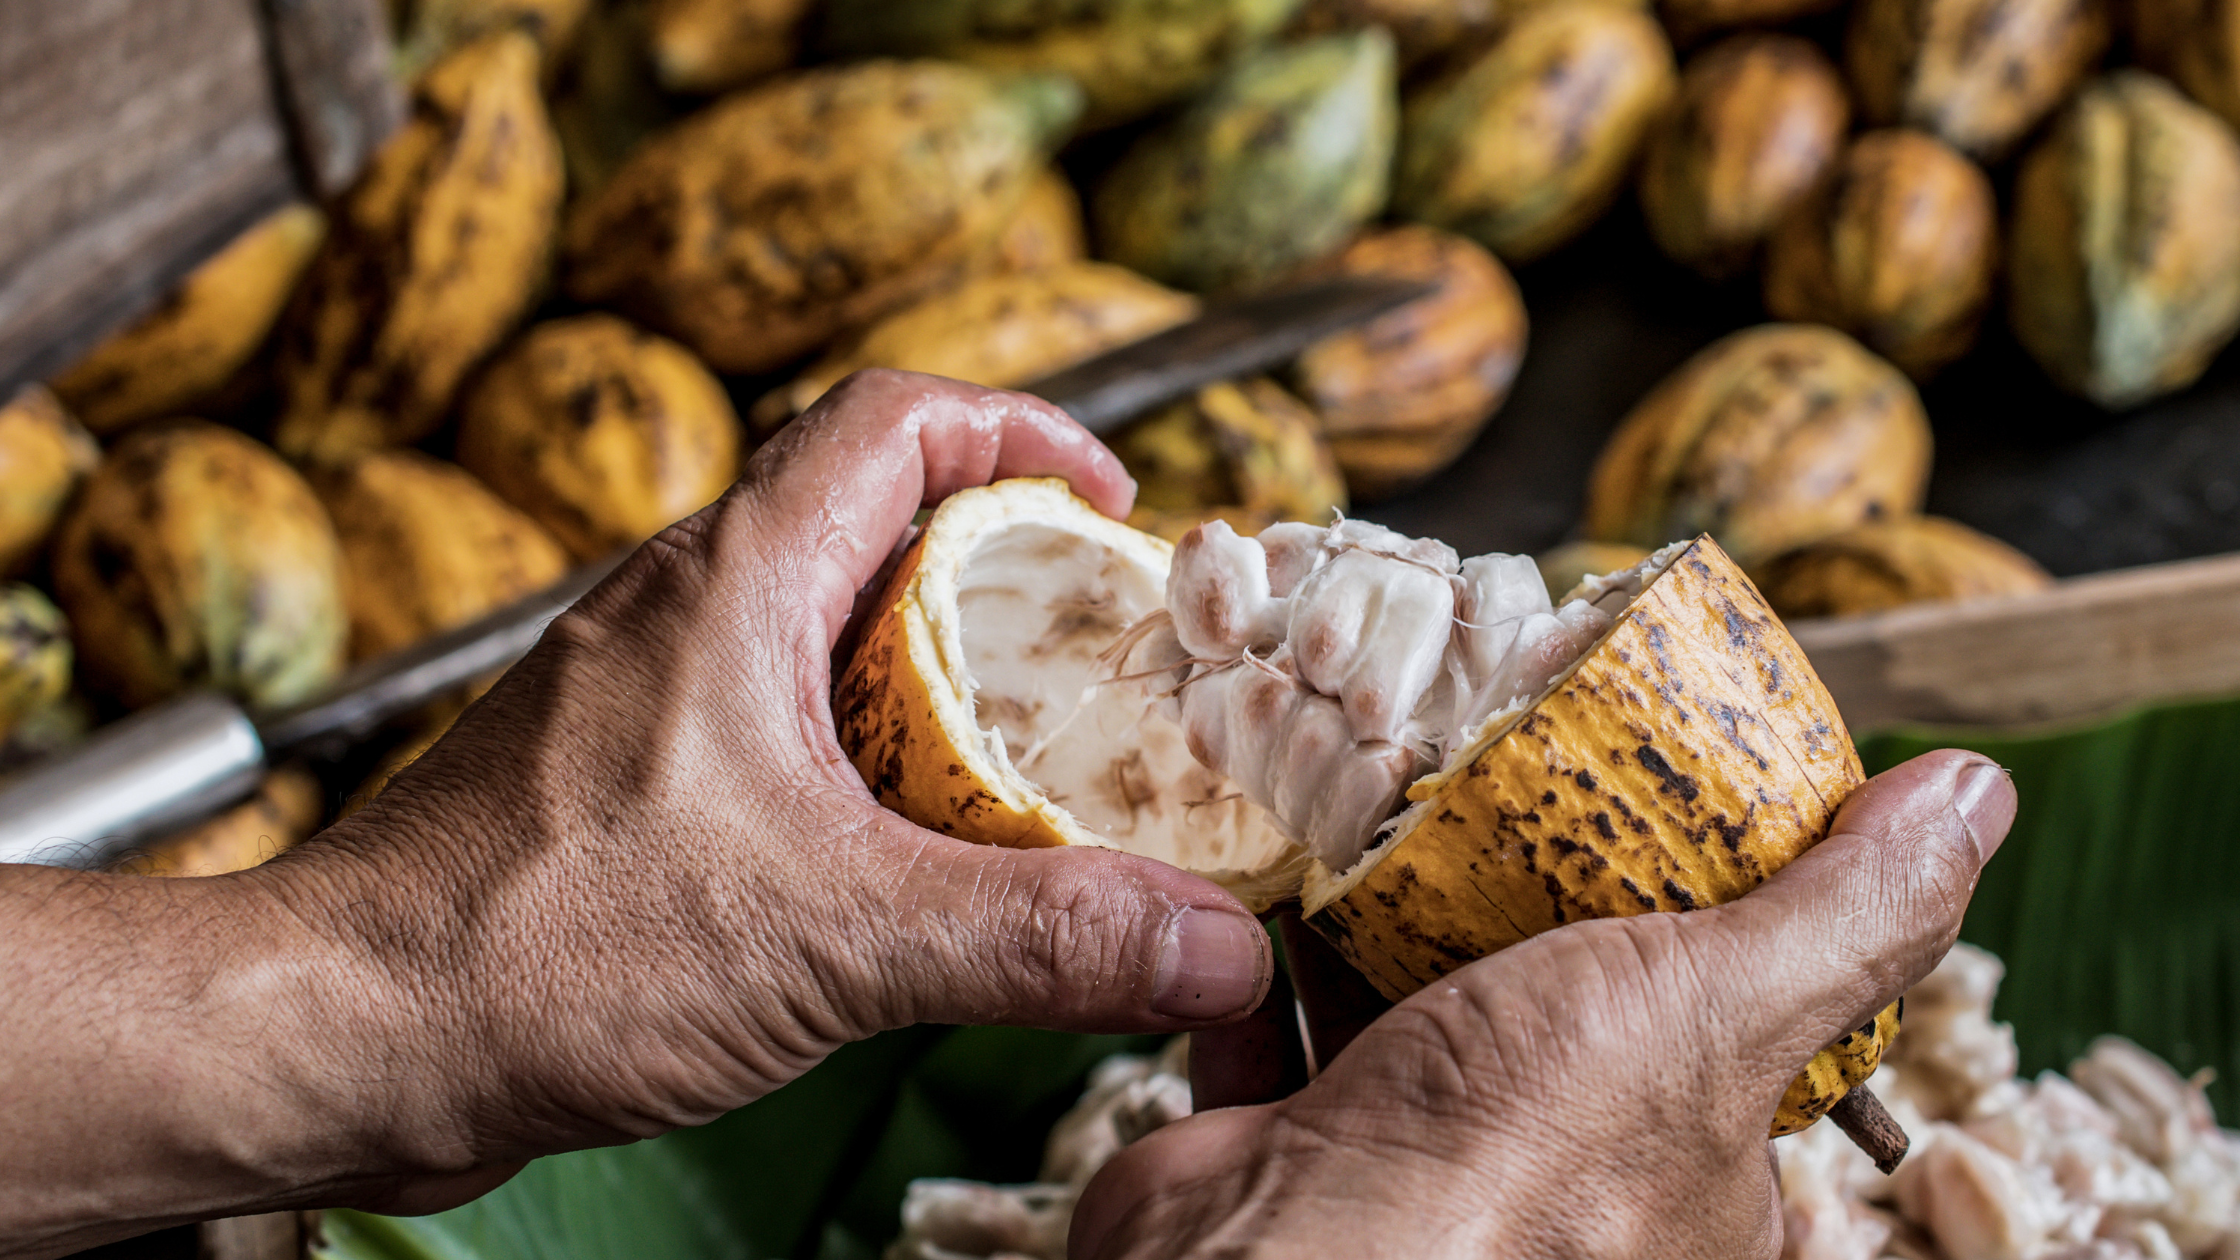 Eine Person reißt eine Kakao-Frucht auf. Im Hintergrund sieht man weitere Kakaofrüchte liegen.